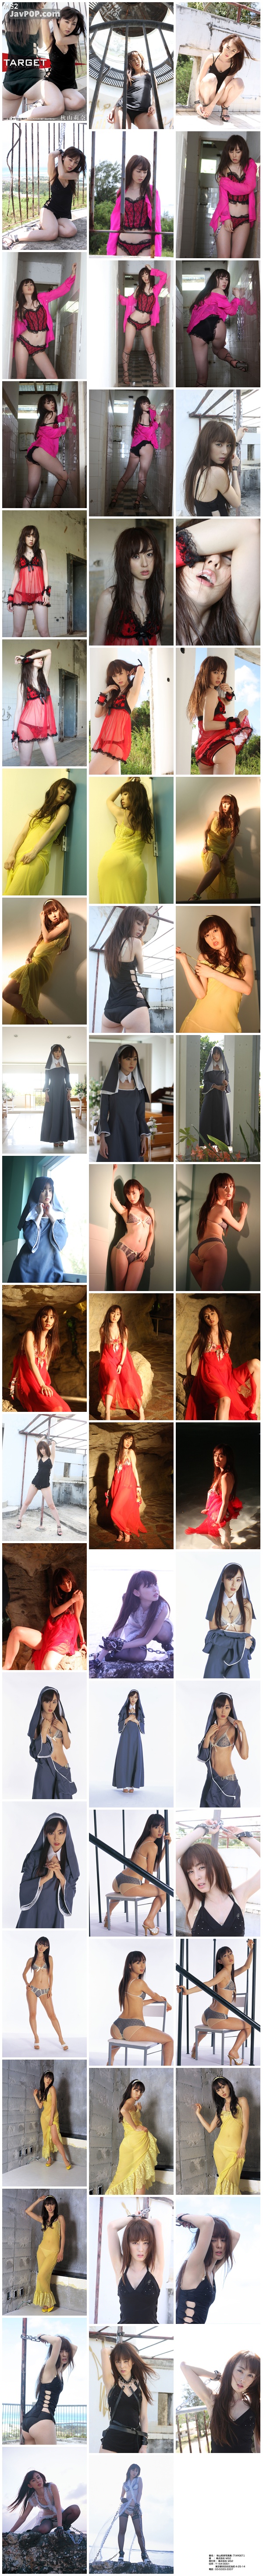 [Digital_Photobook] 秋山莉奈 Rina Akiyama - TARGET